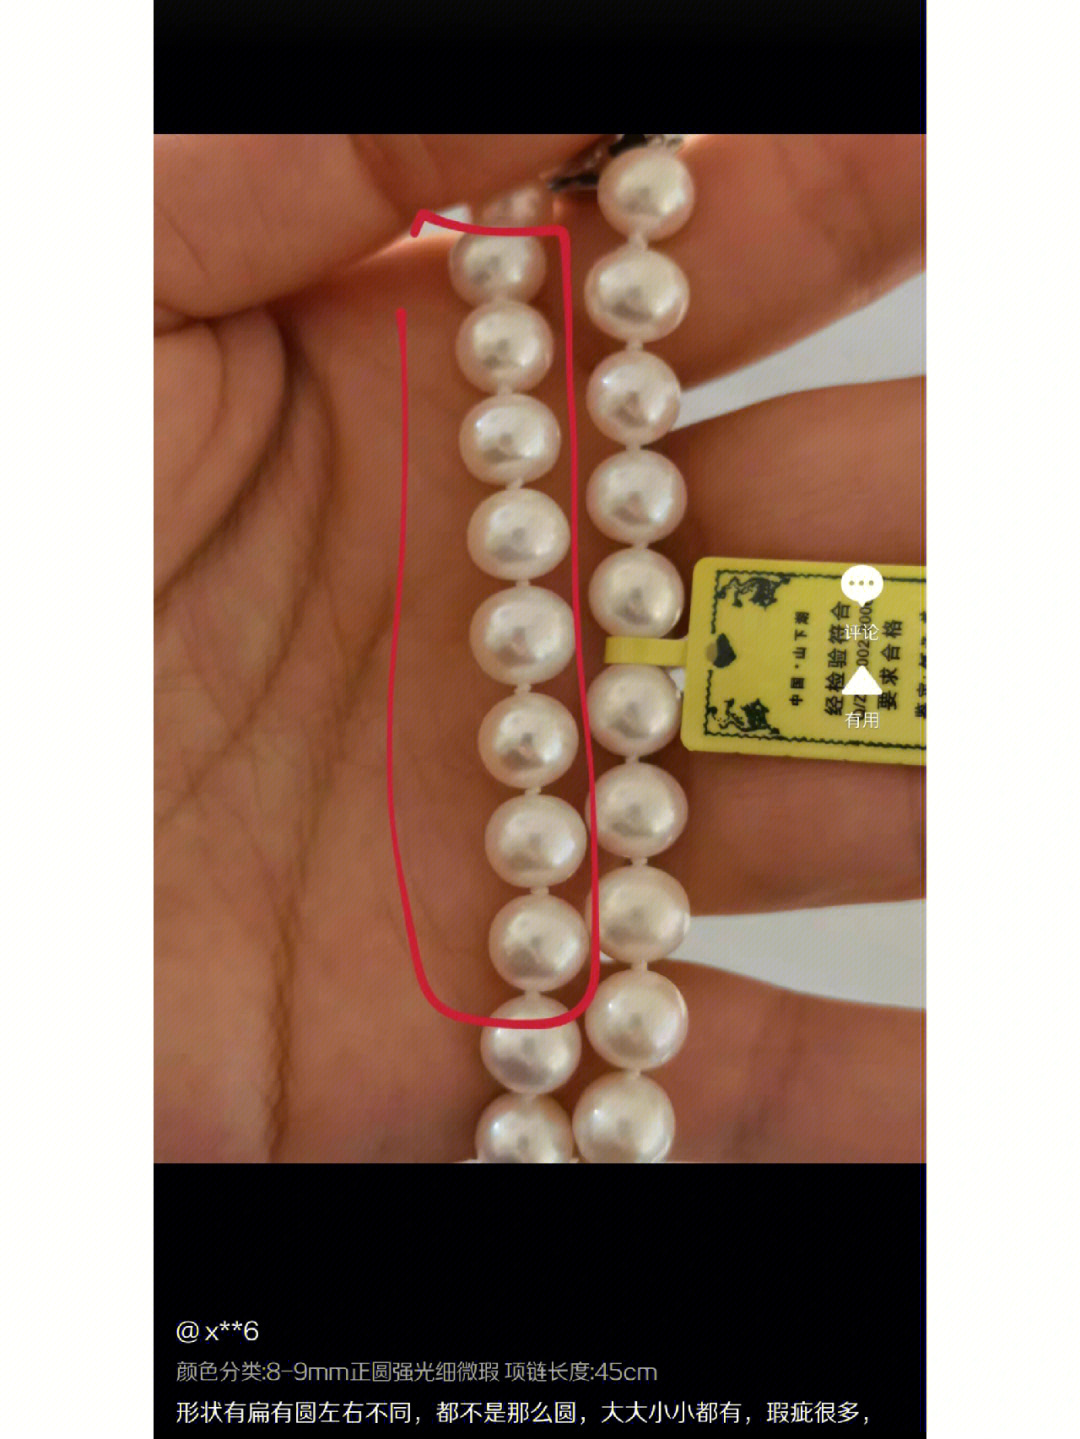 89mm的不同价位珍珠项链四选一帮忙选选